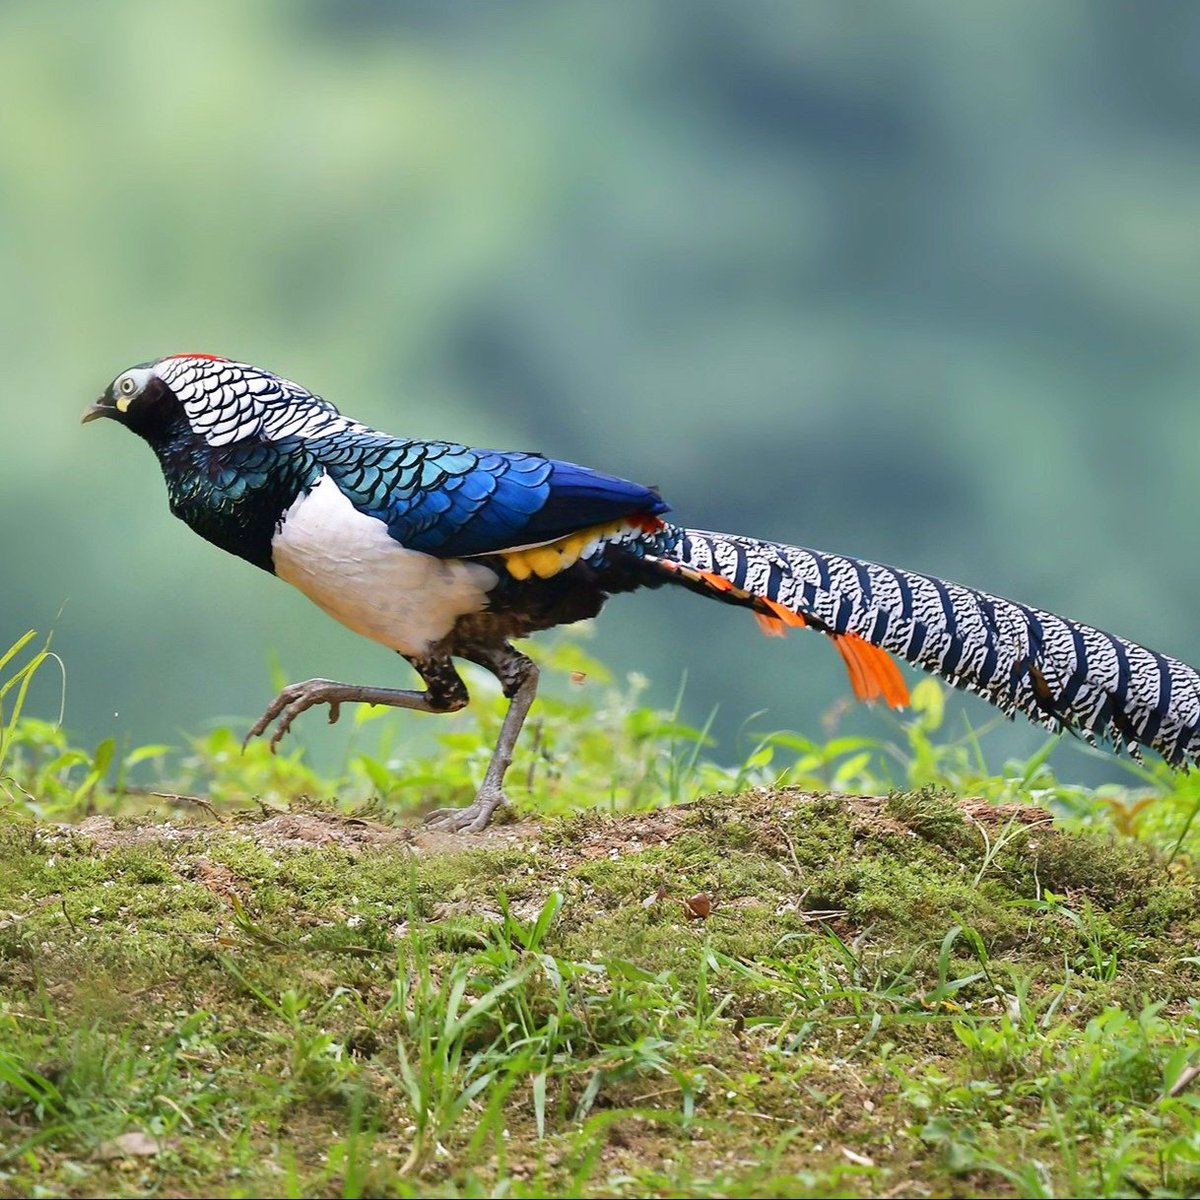 Guess the name of the bird🤪 #birds #nature #photos #LovelyBirdsInChina